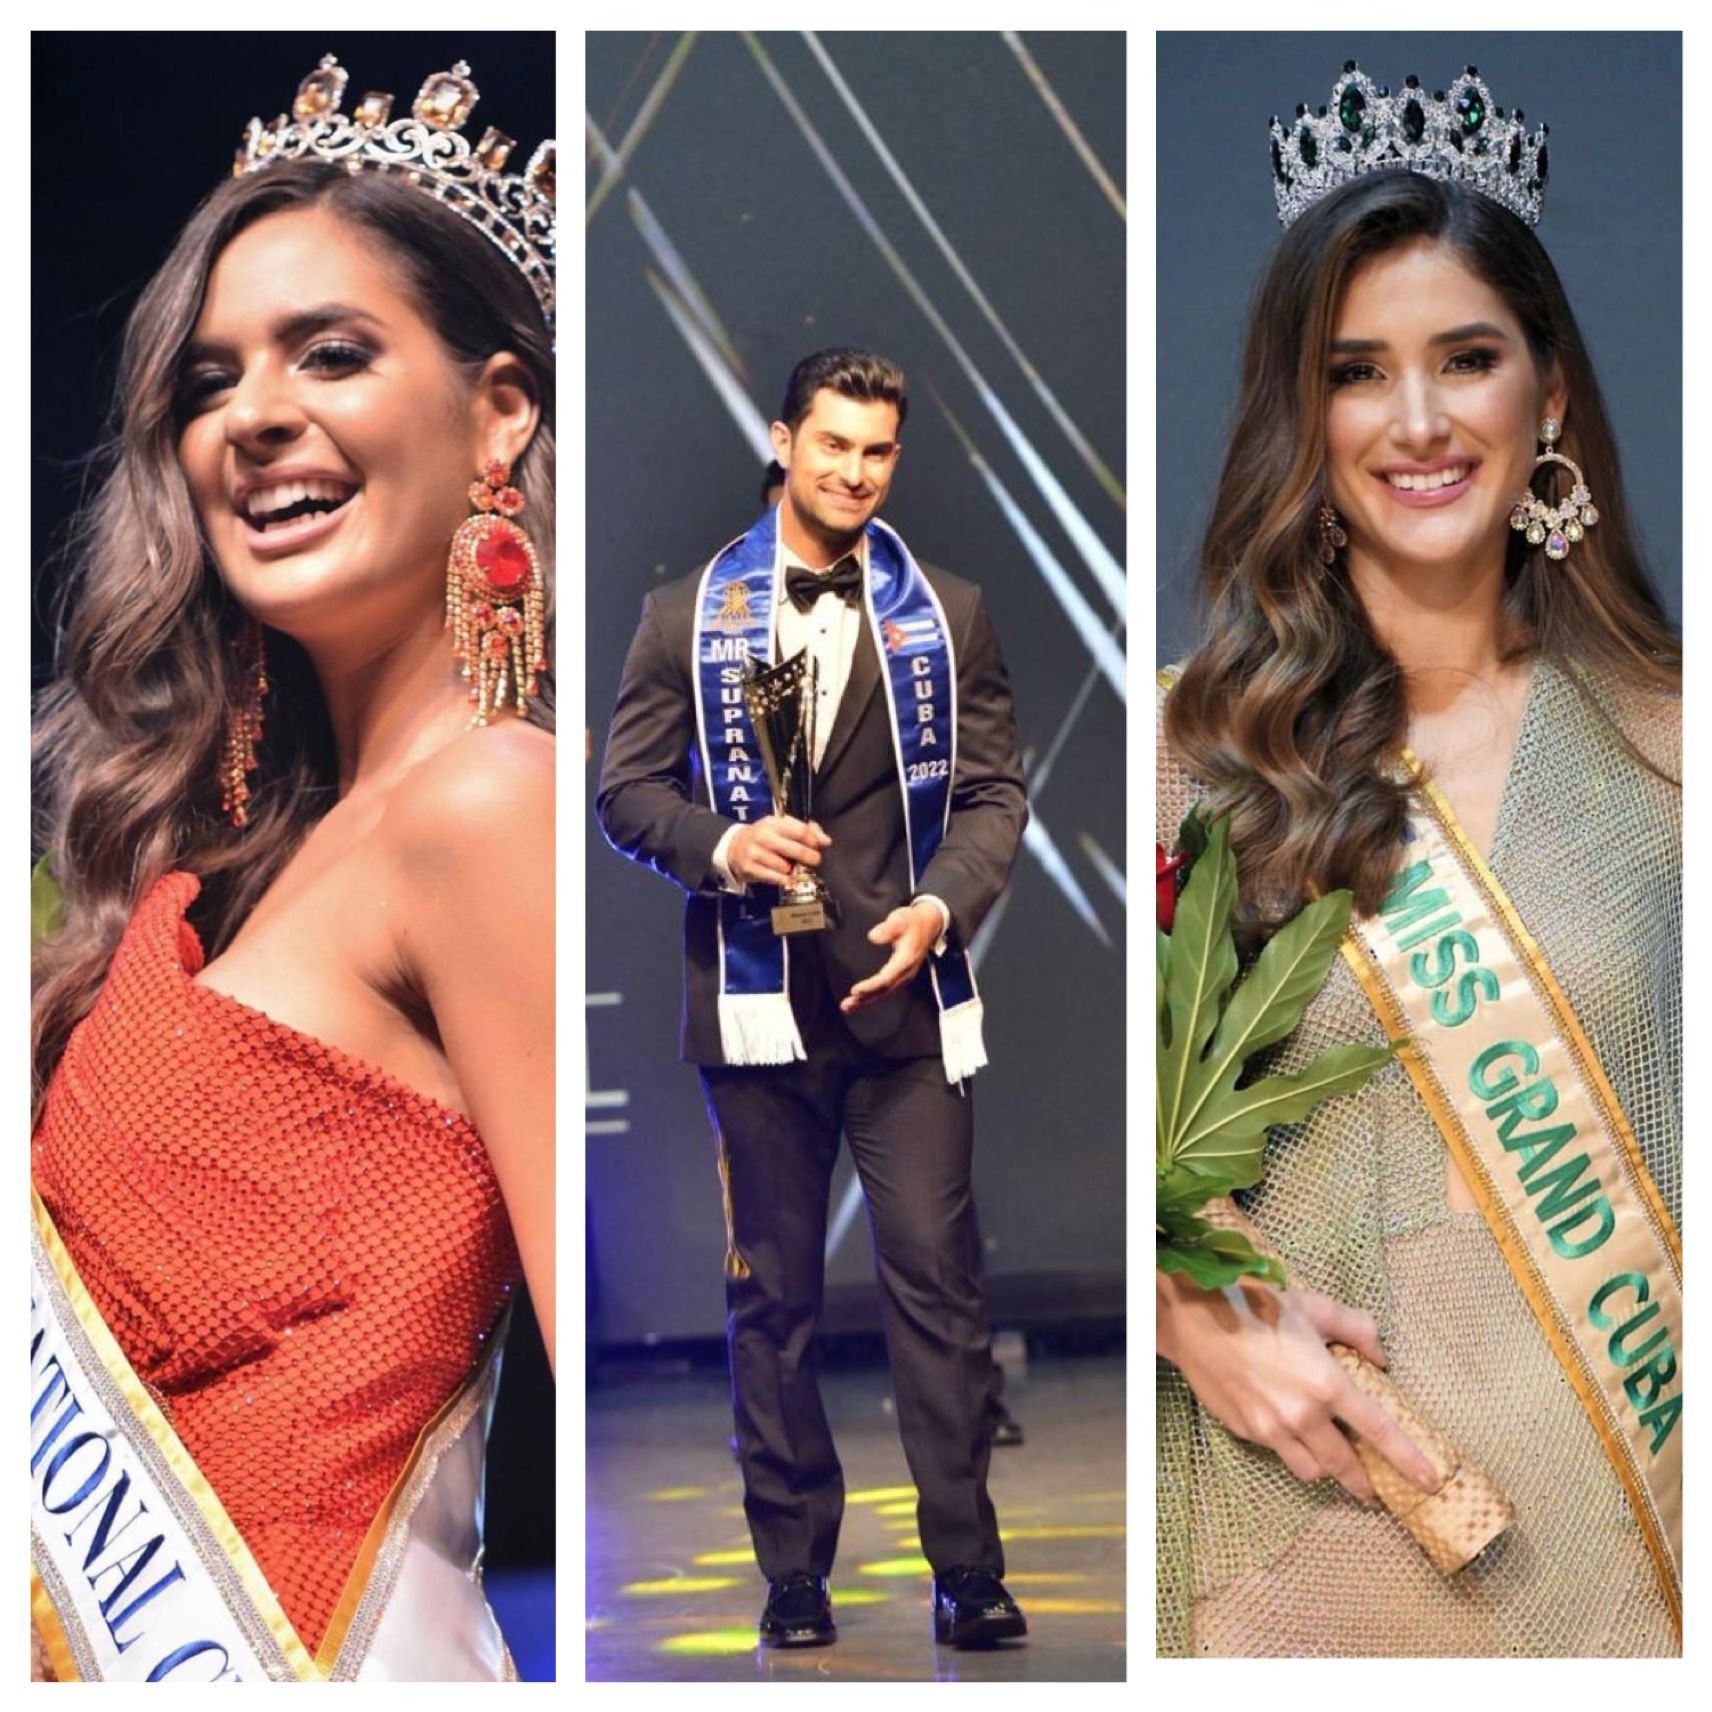 Daniela Espinoza, Luis Daniel Gálvez y Liz Rodríguez representarán a Cuba en concursos internacionales de belleza